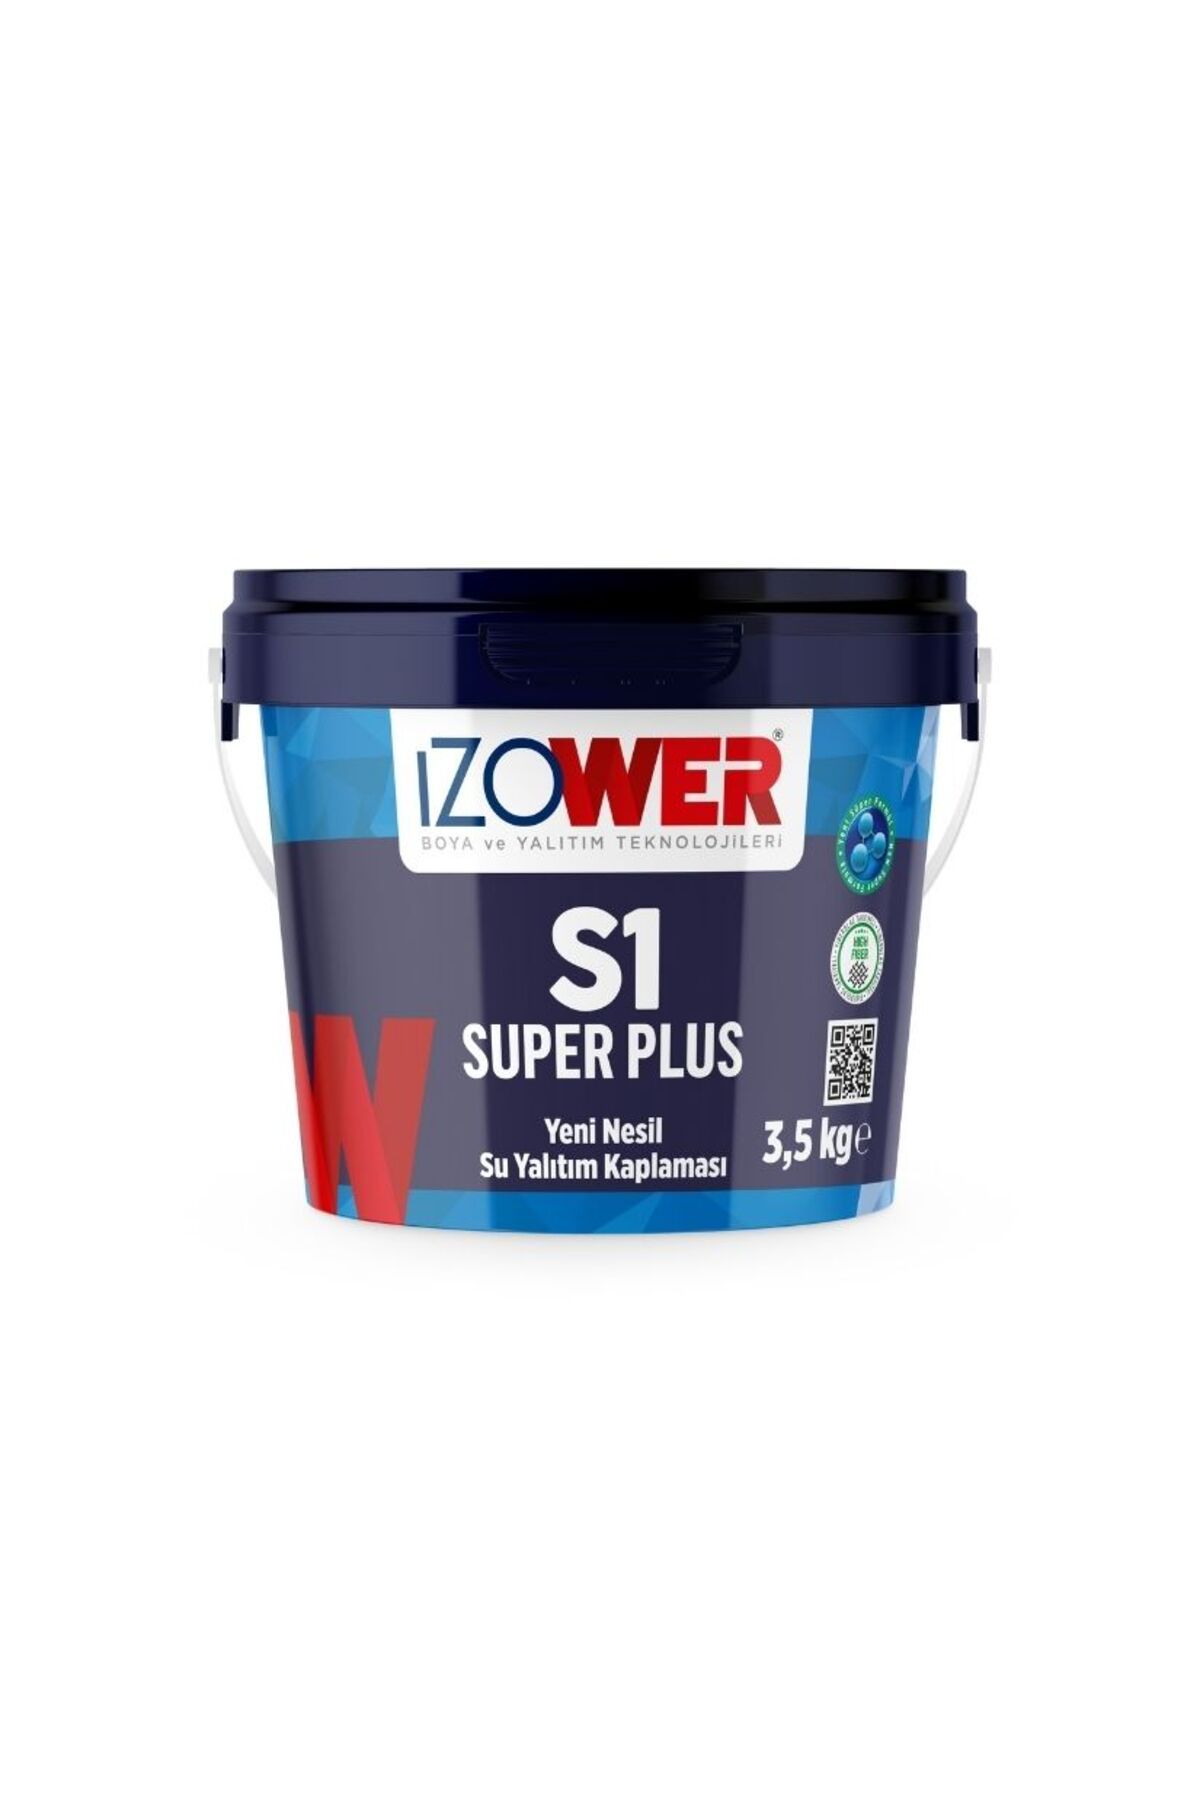 izower S1 Süper Plus Su Yalıtım Kaplaması- Beyaz- 3.5 Kg